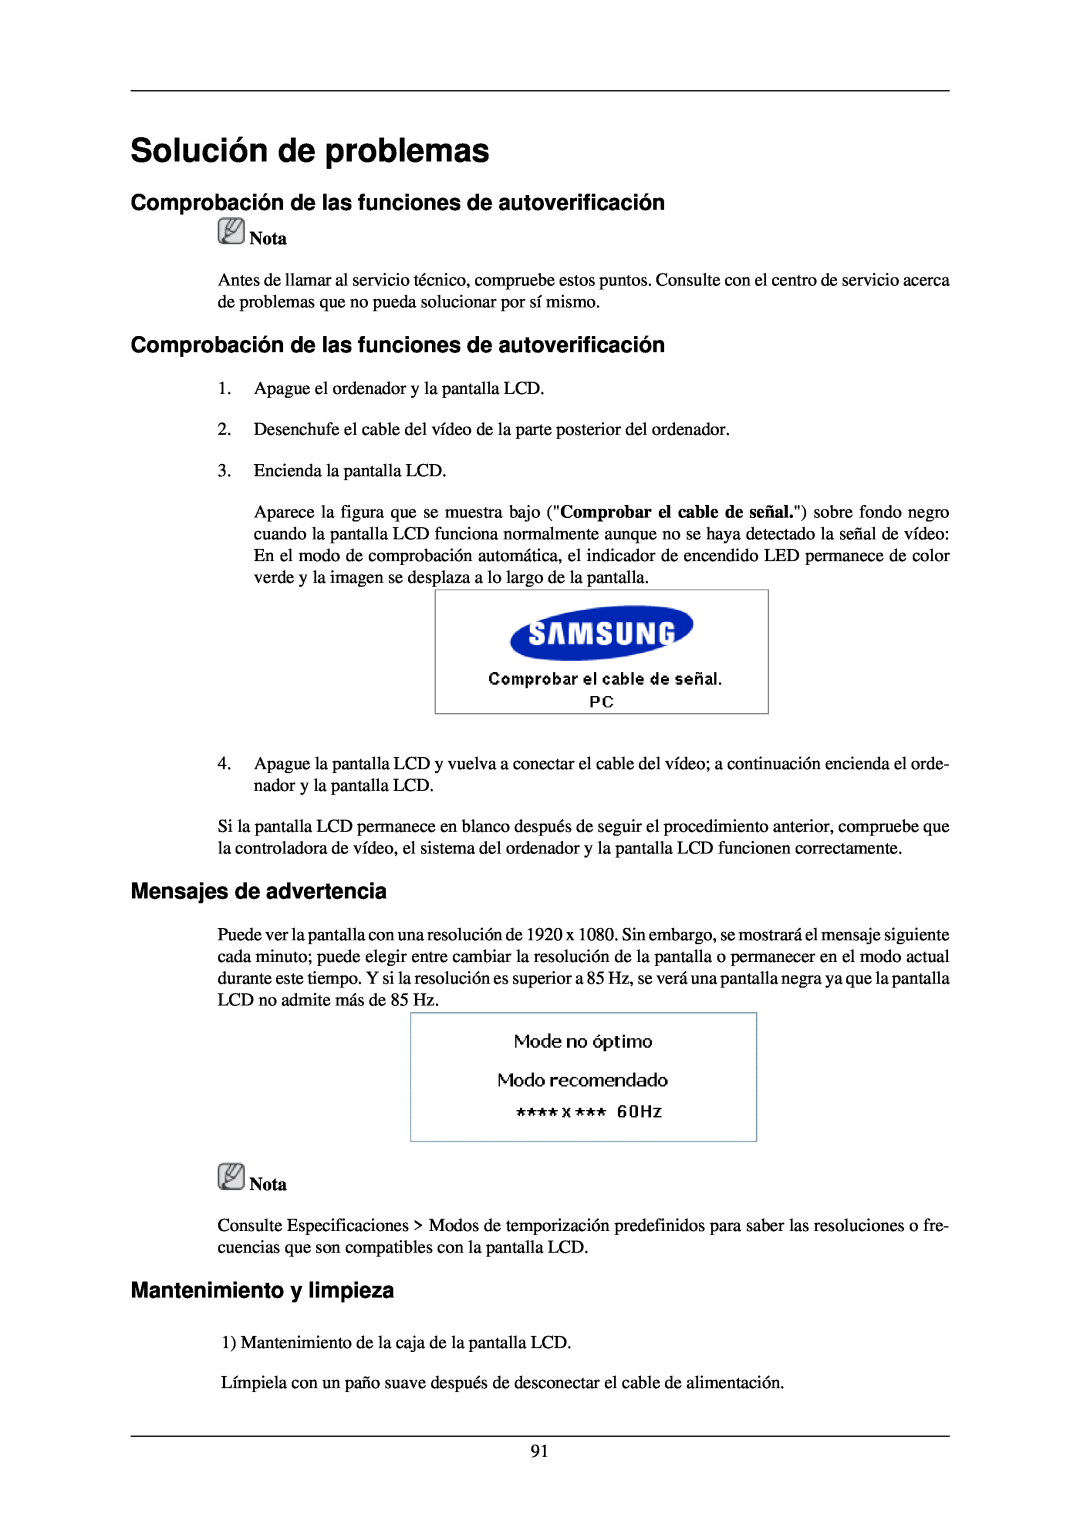 Samsung LH46TCUMBC/EN Solución de problemas, Comprobación de las funciones de autoverificación, Mensajes de advertencia 